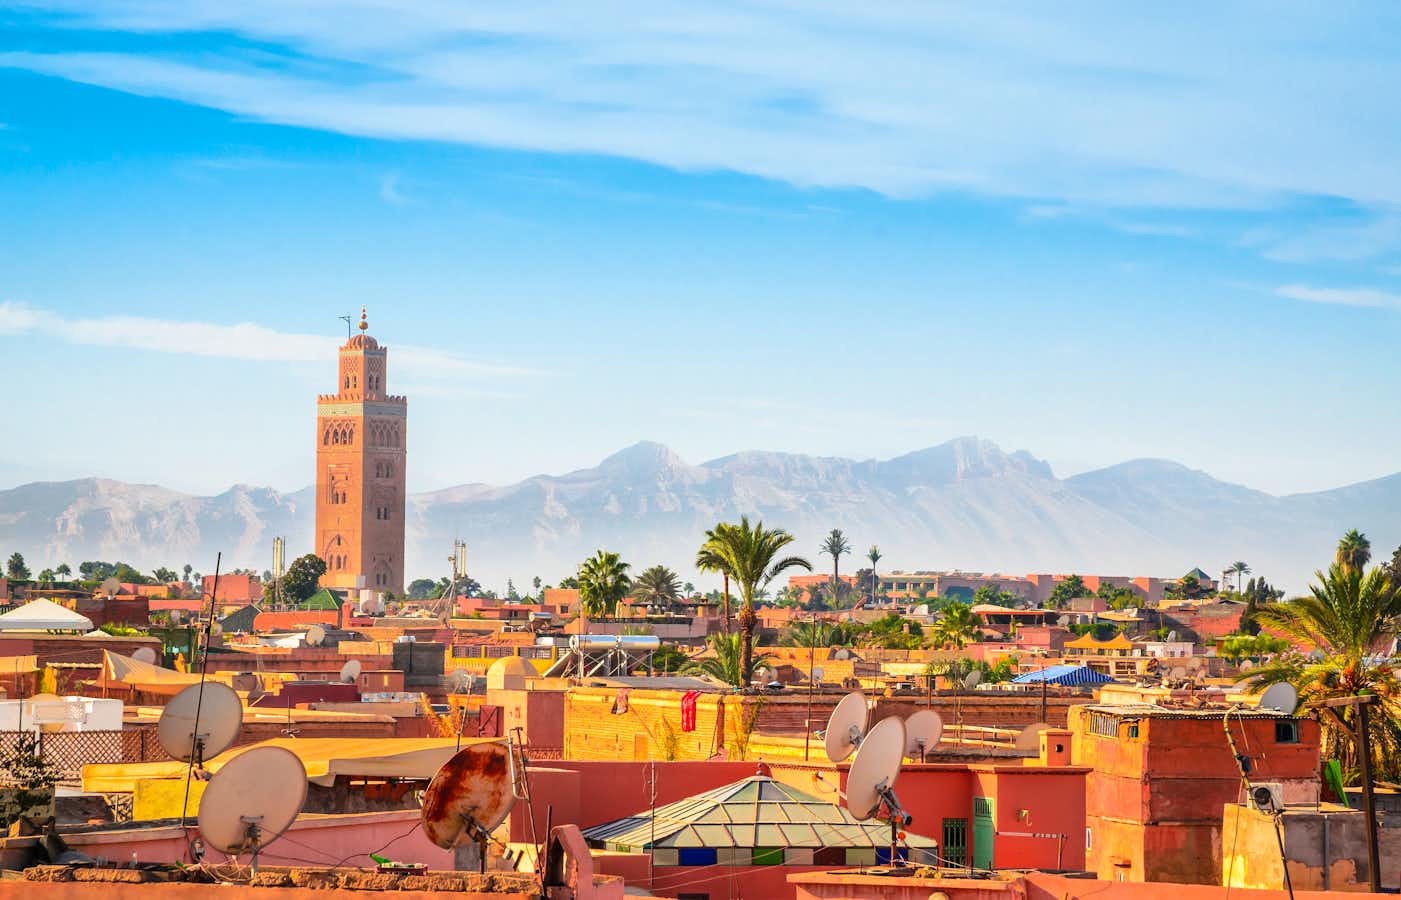 tourhub | Leger Holidays | Marrakech Express 